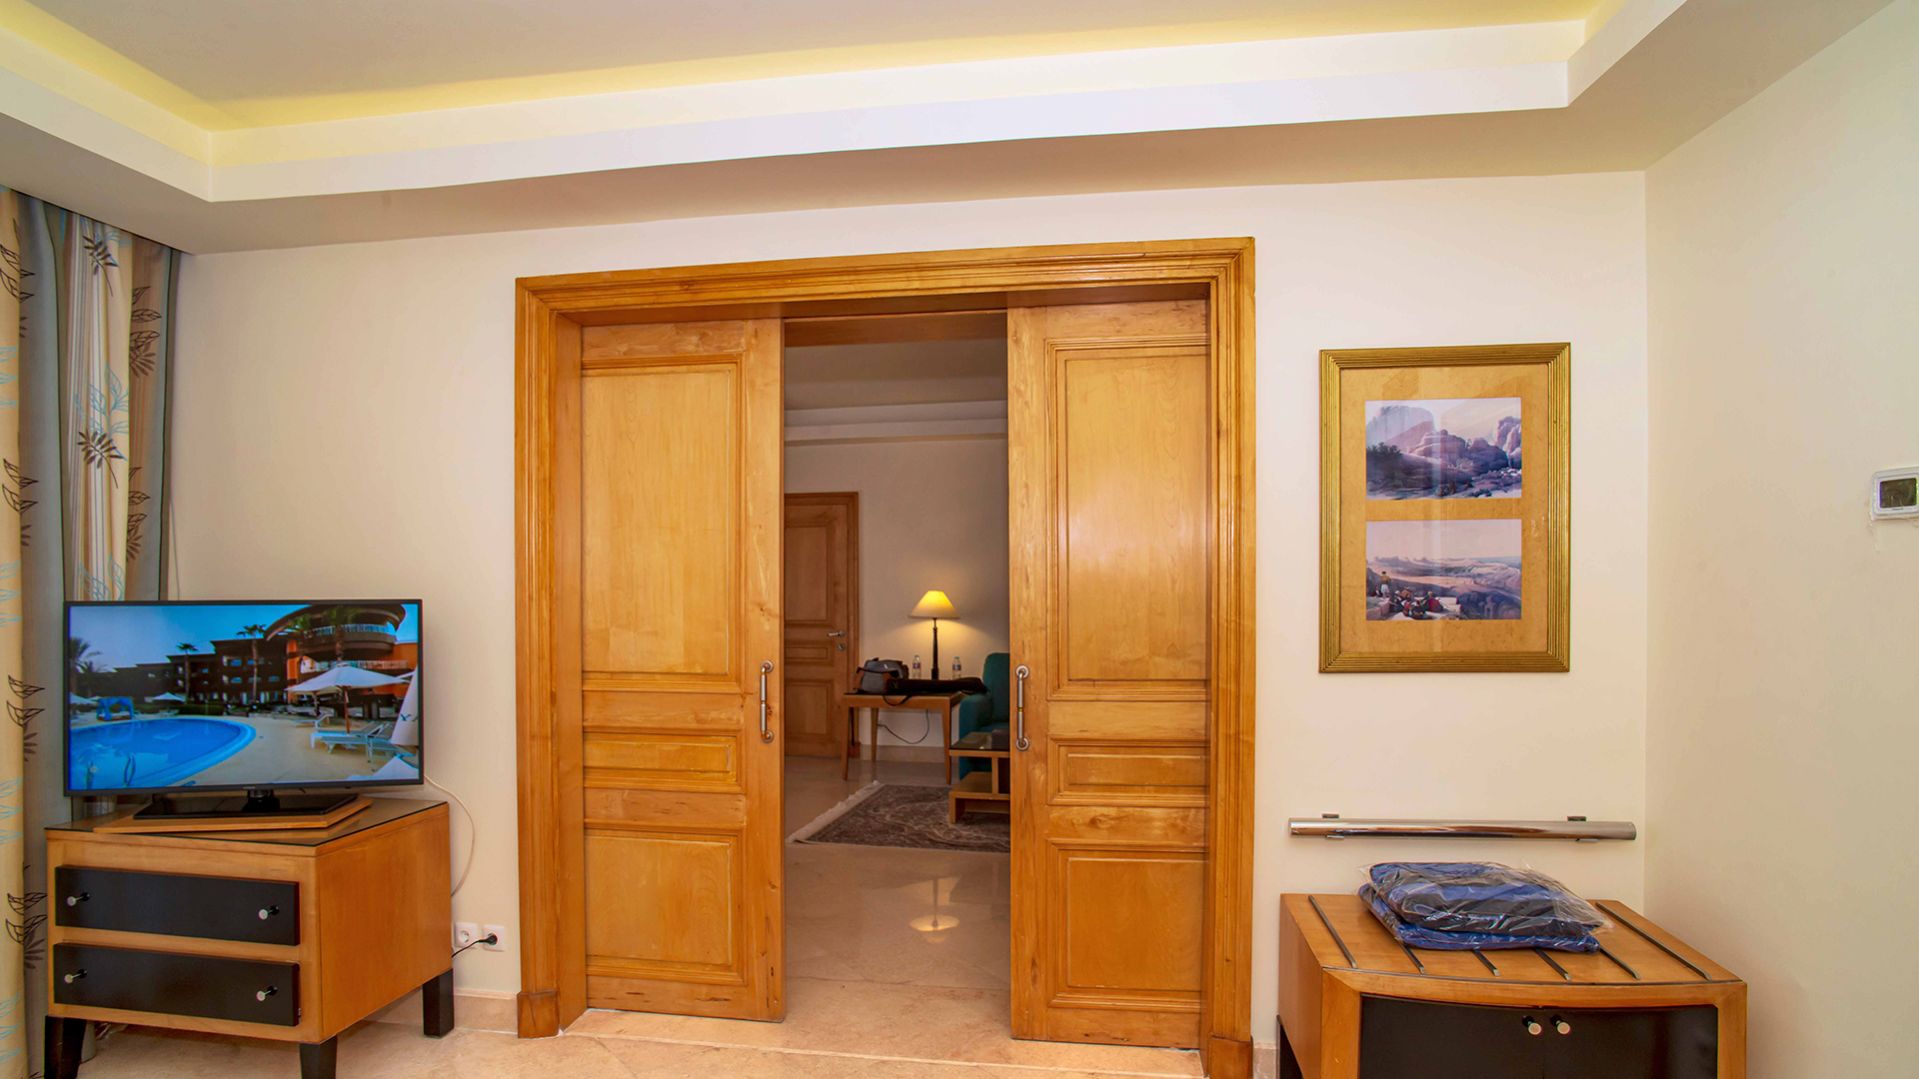 A Bedroom With A Wooden Door